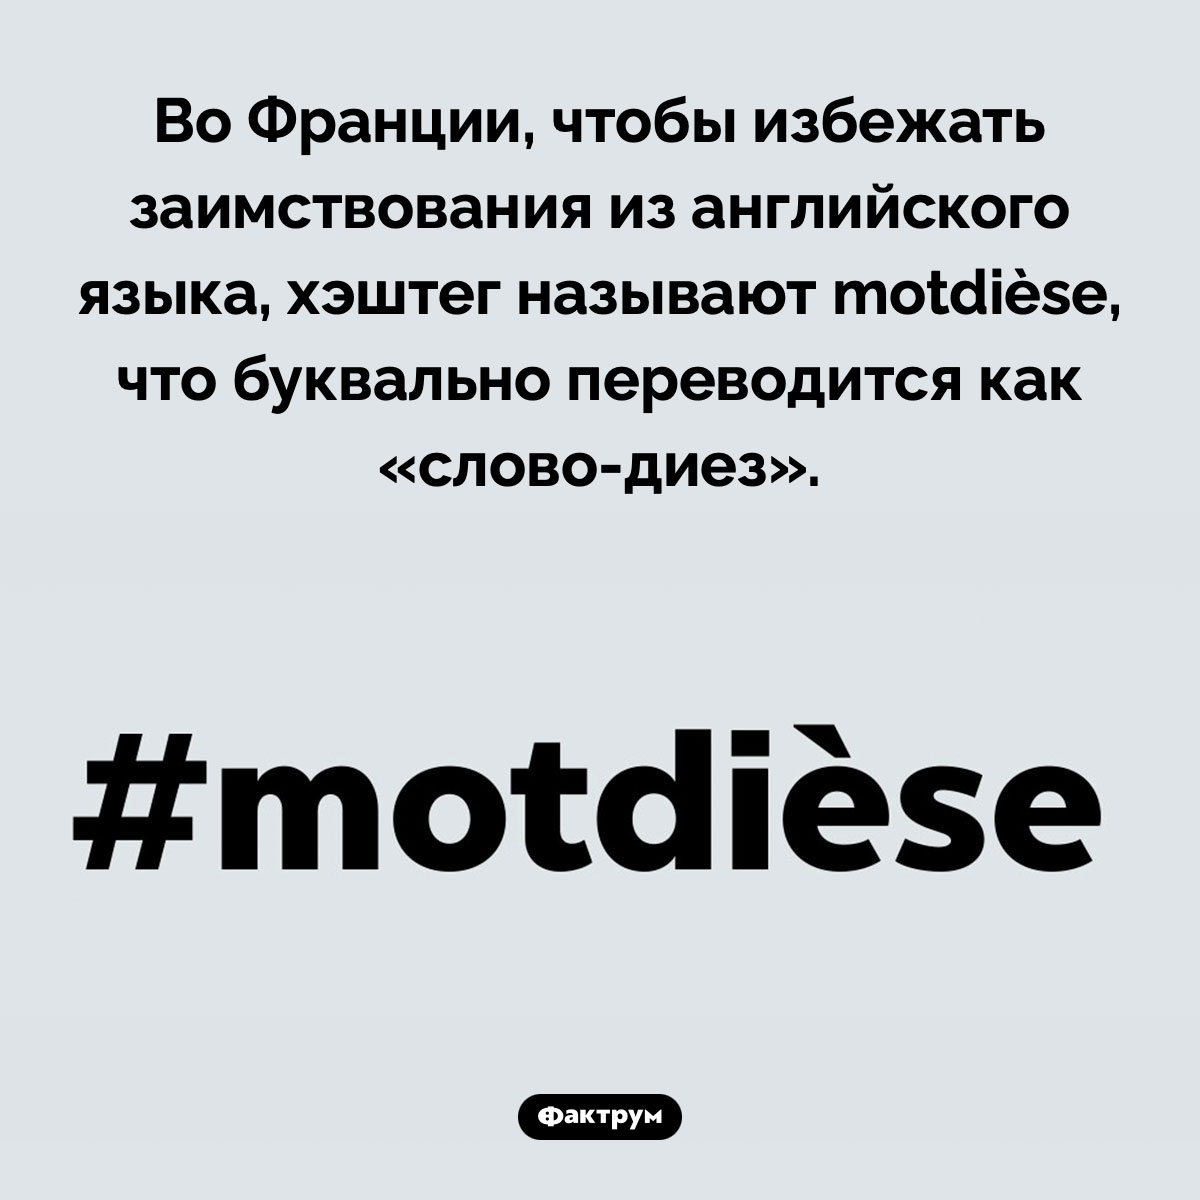 Как во Франции называют хэштег. Во Франции, чтобы избежать заимствования из английского языка, хэштег называют motdièse, что буквально переводится как «слово-диез».